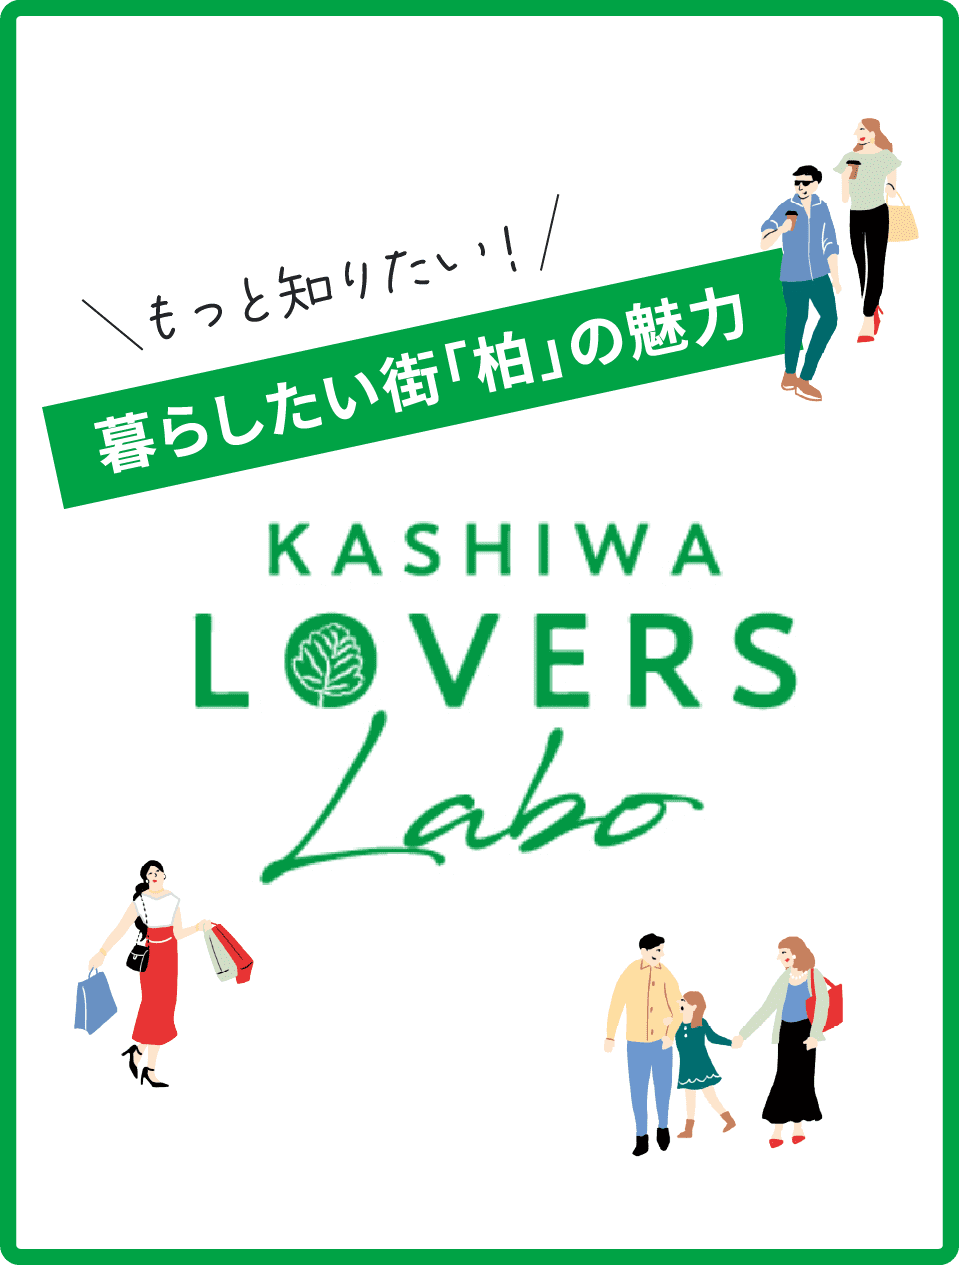 もっと知りたい!暮らしたい街「柏」の魅力 KASHIWA LOVERS Labo